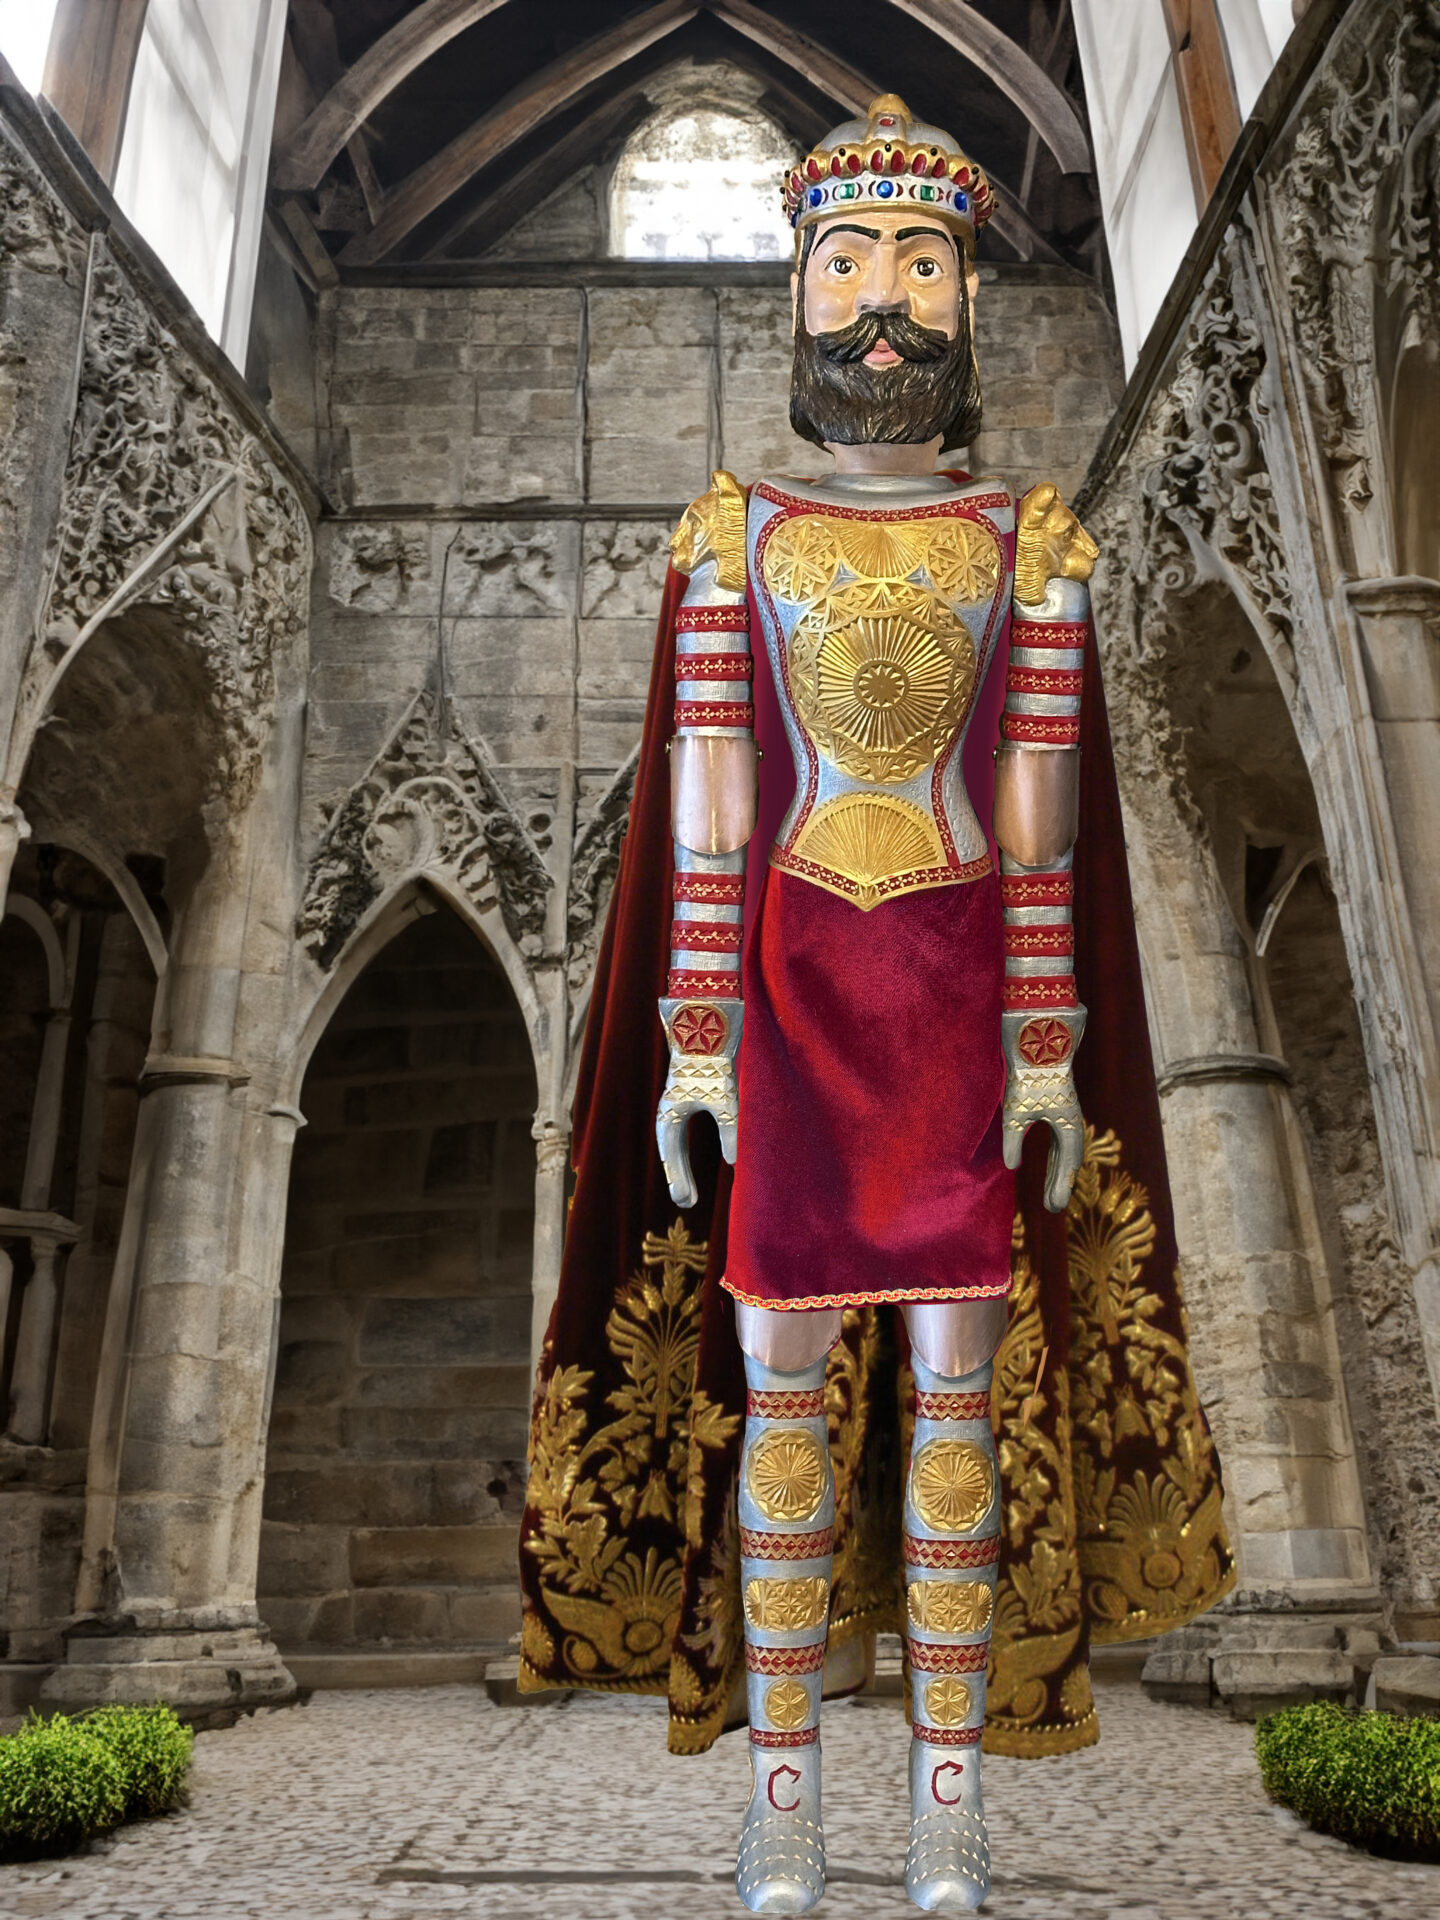 Centre de la marionnette de Saint-Nicolas, Charlemagne par Michel